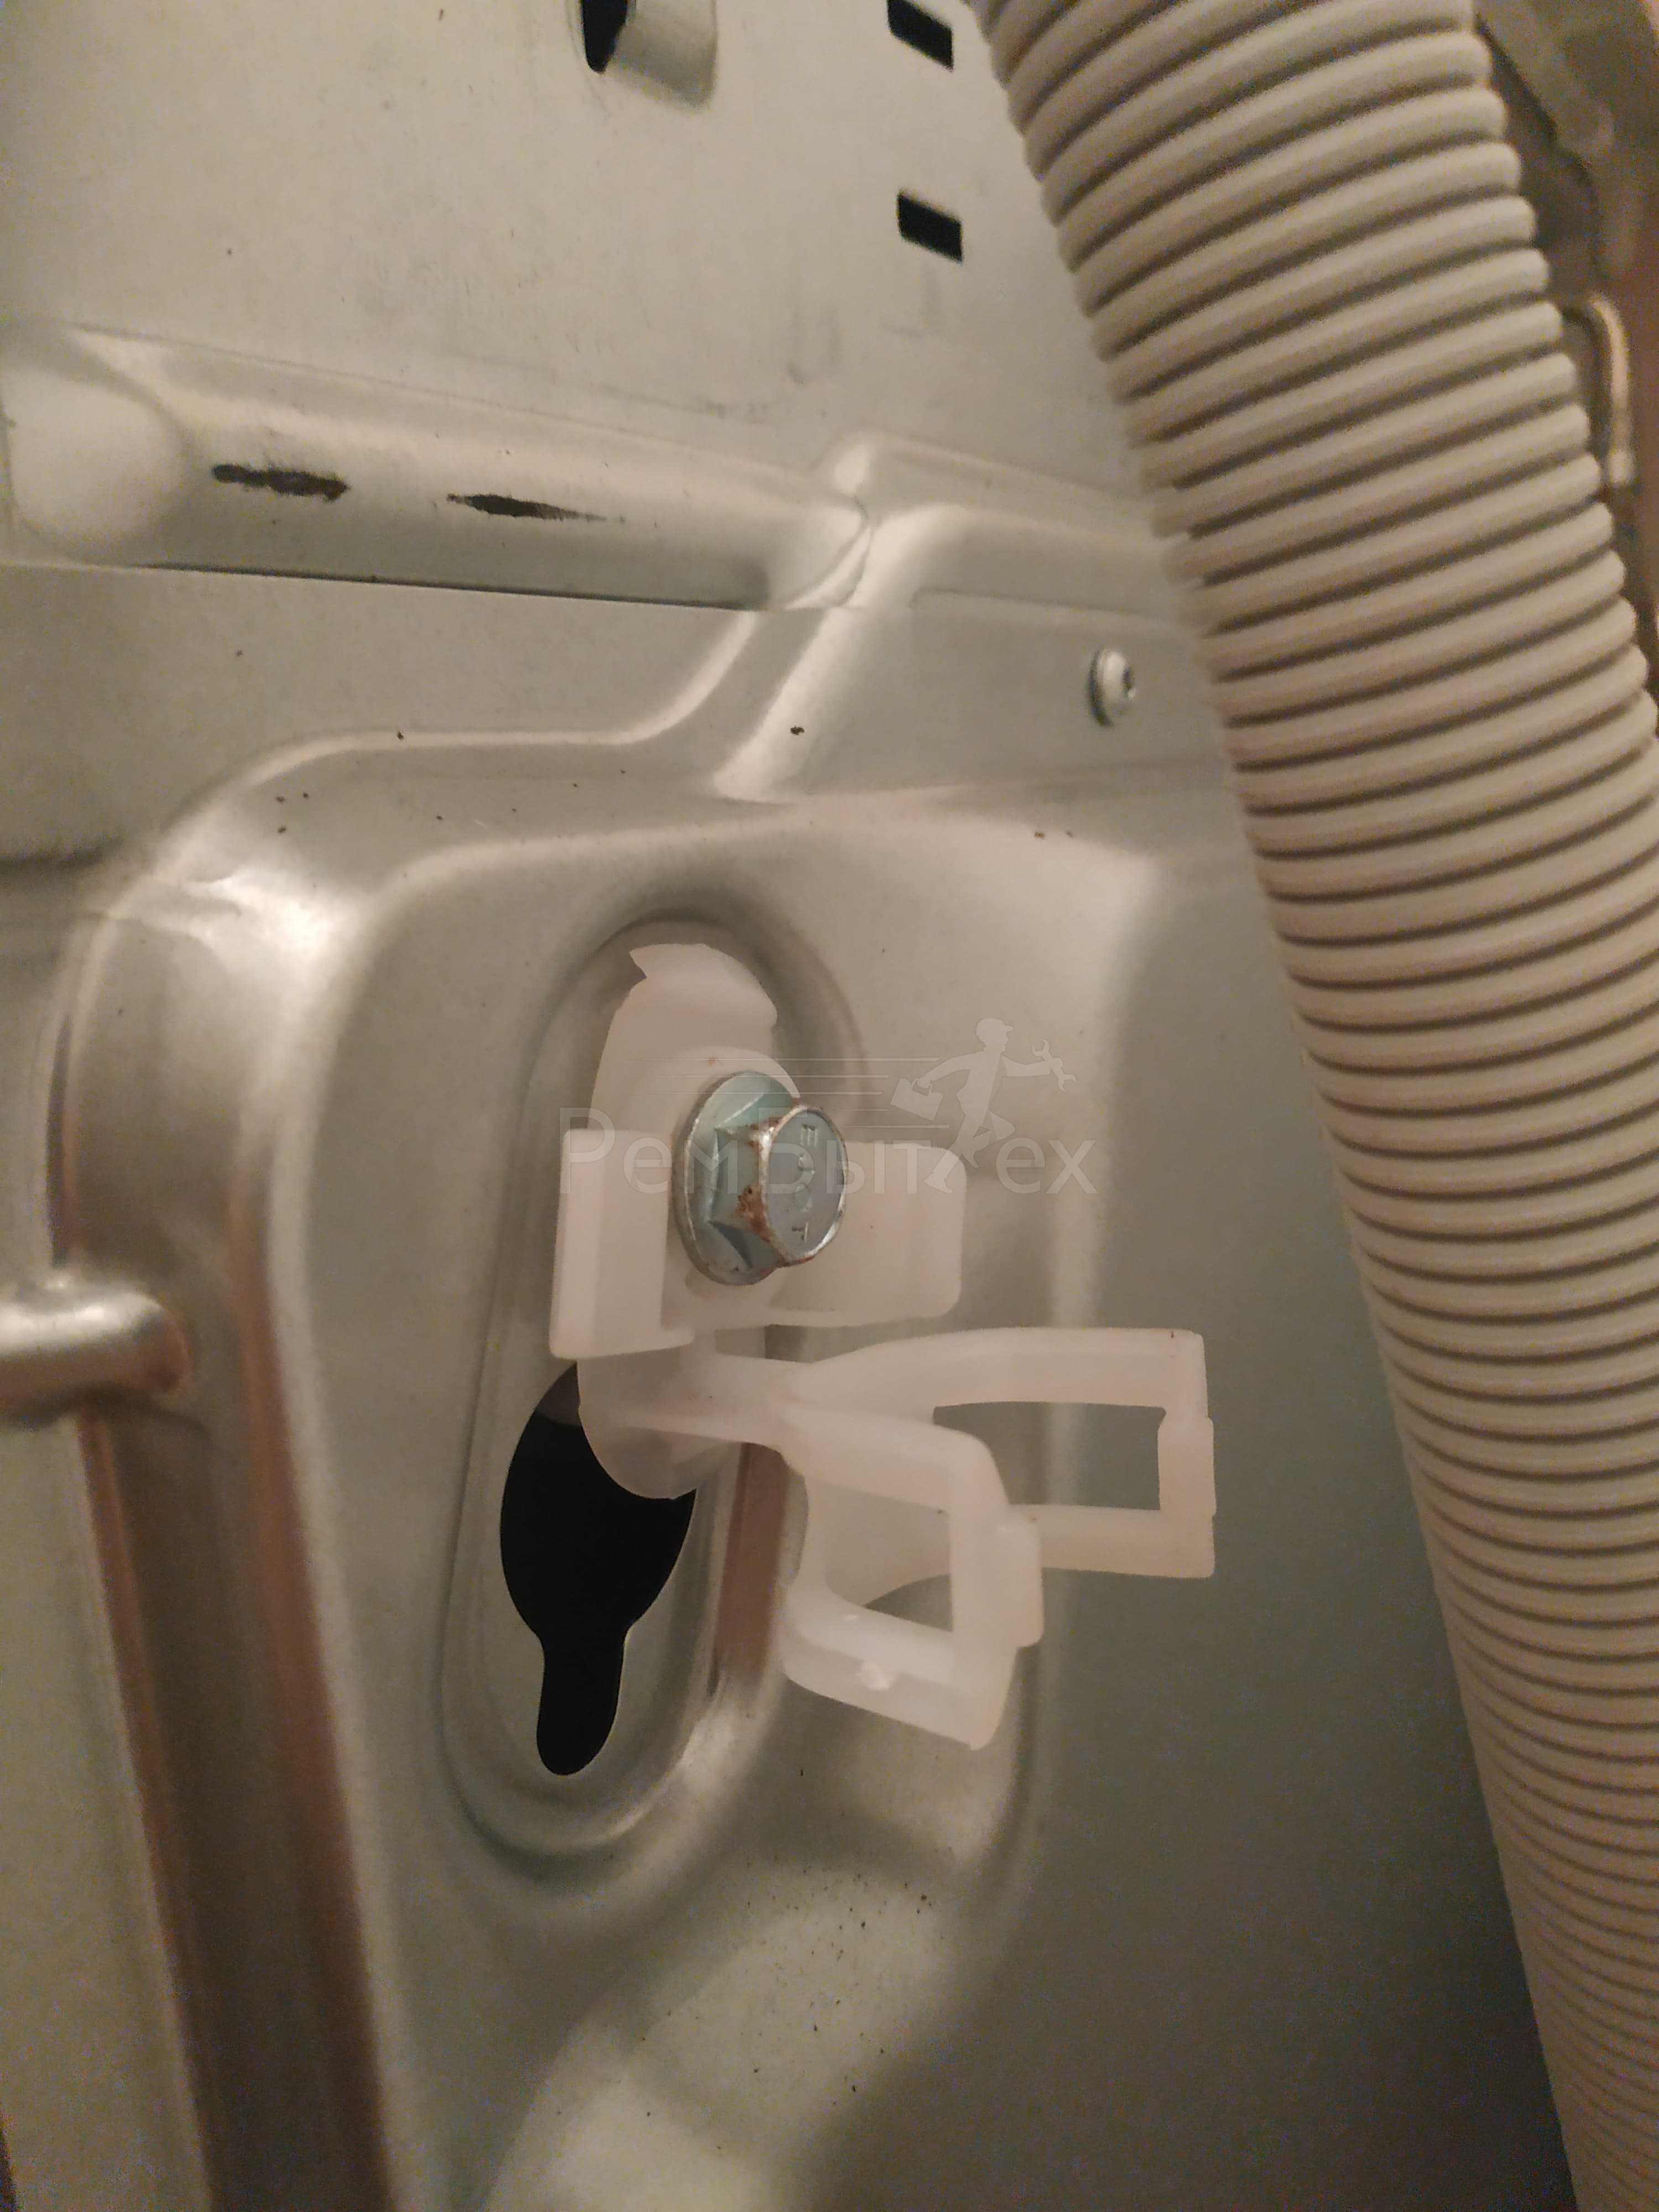 Почему стиральная машина бьет током